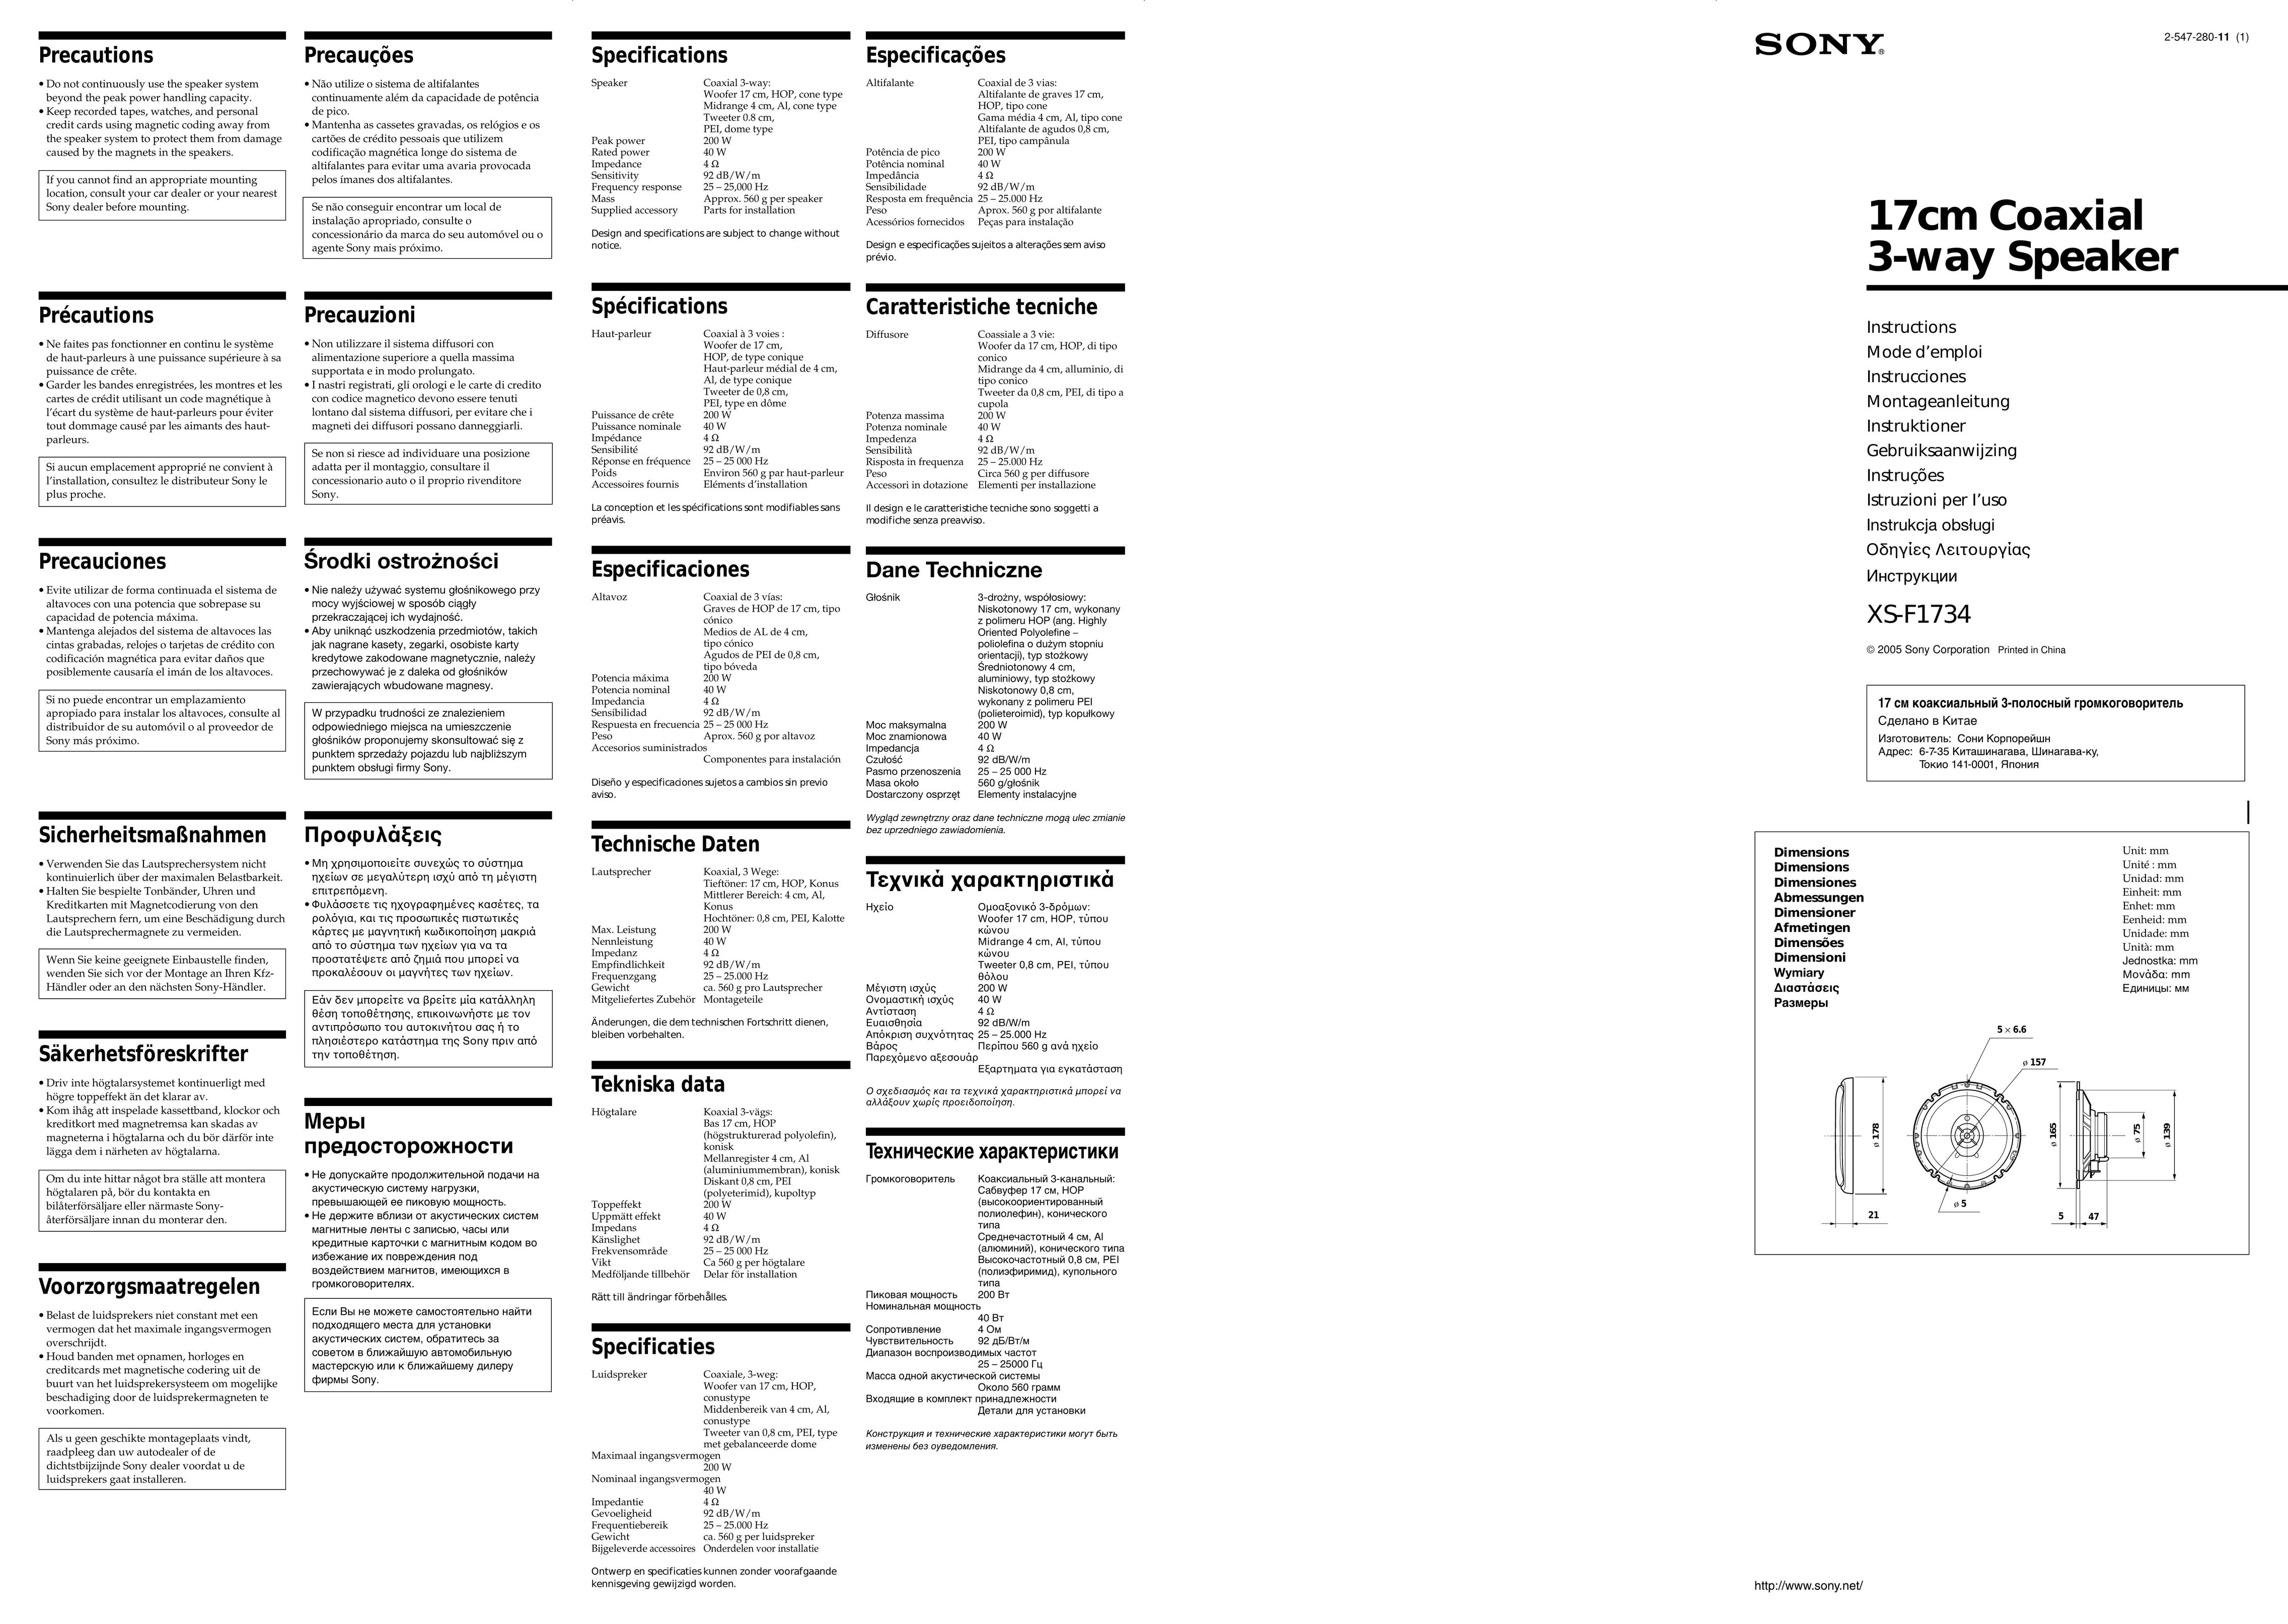 Sony F1734 Speaker User Manual